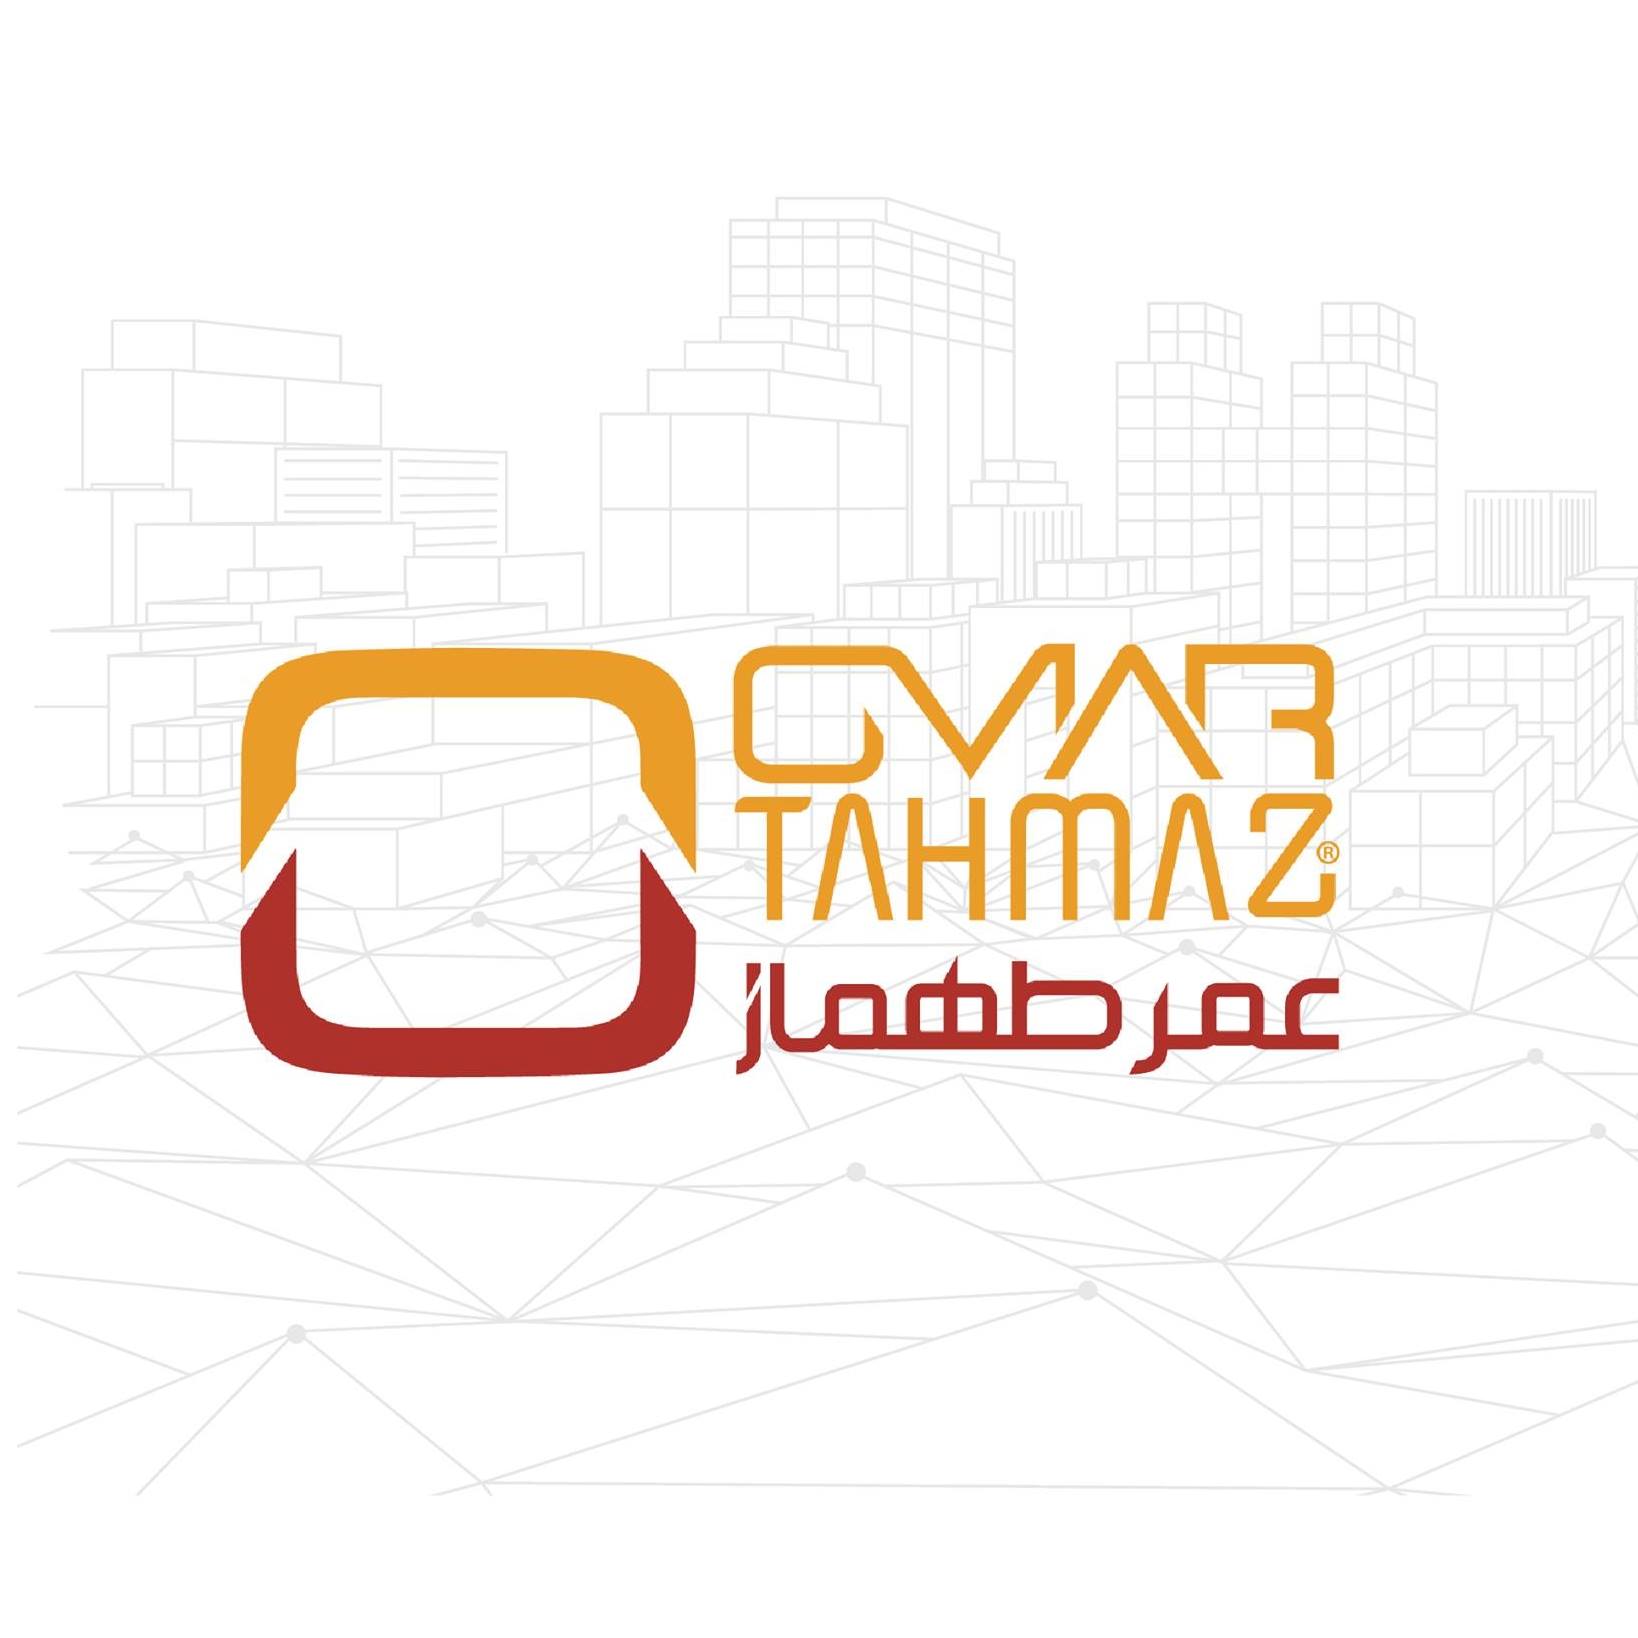  Omar Tahmaz Company / شركة عمر طهماز